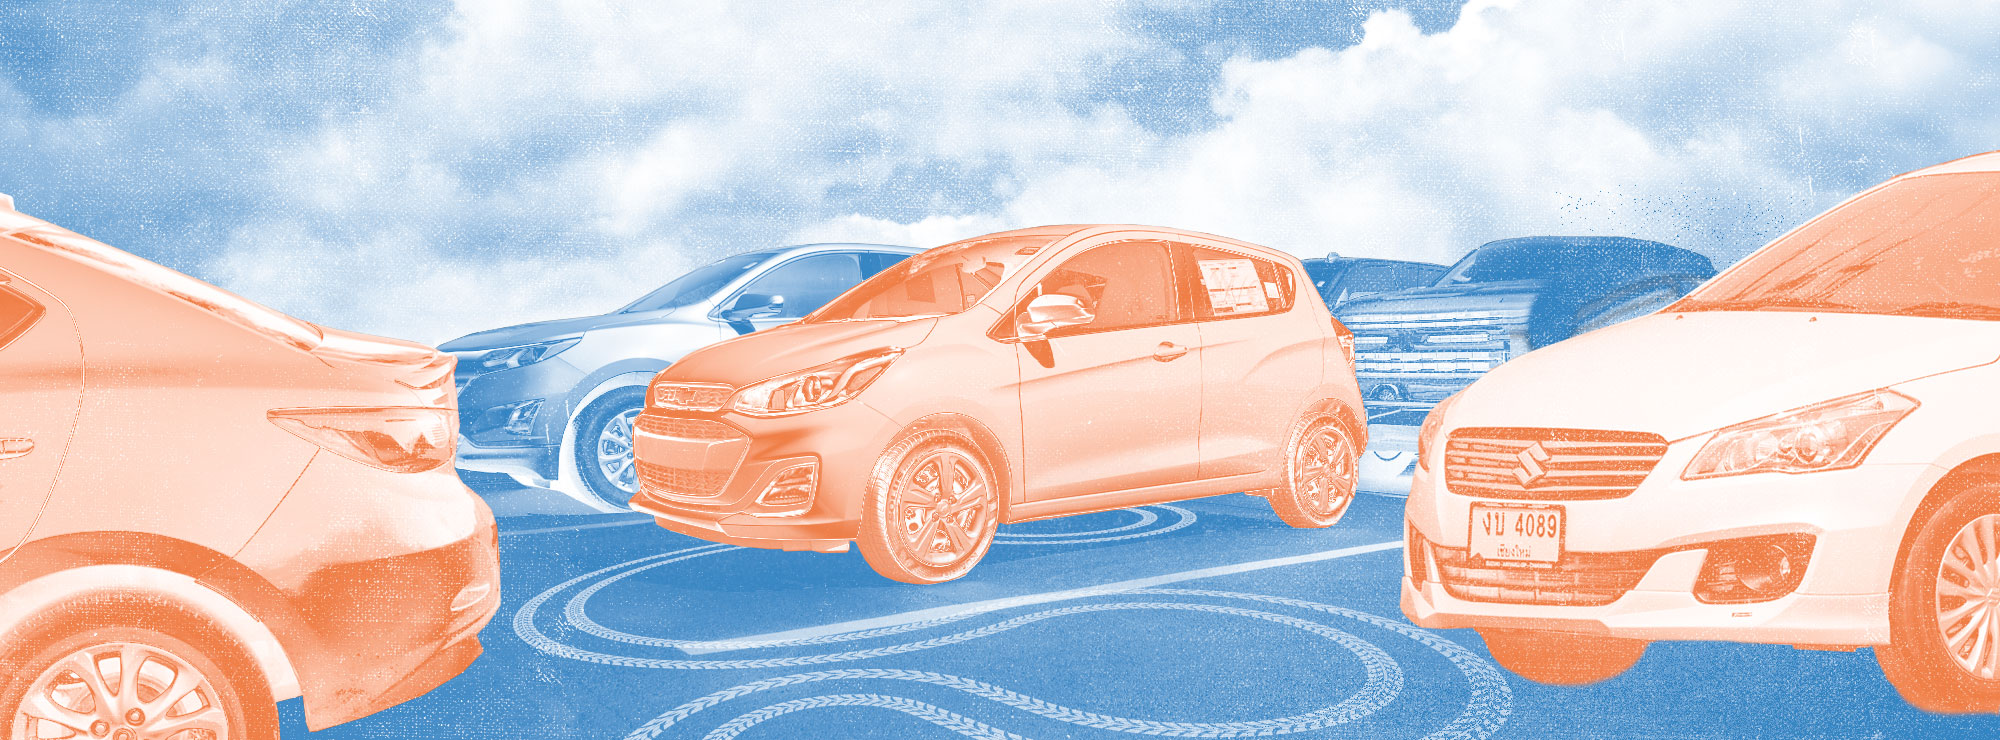 Полноразмерная обложка поста на тему: Как узнать реальный пробег автомобиля